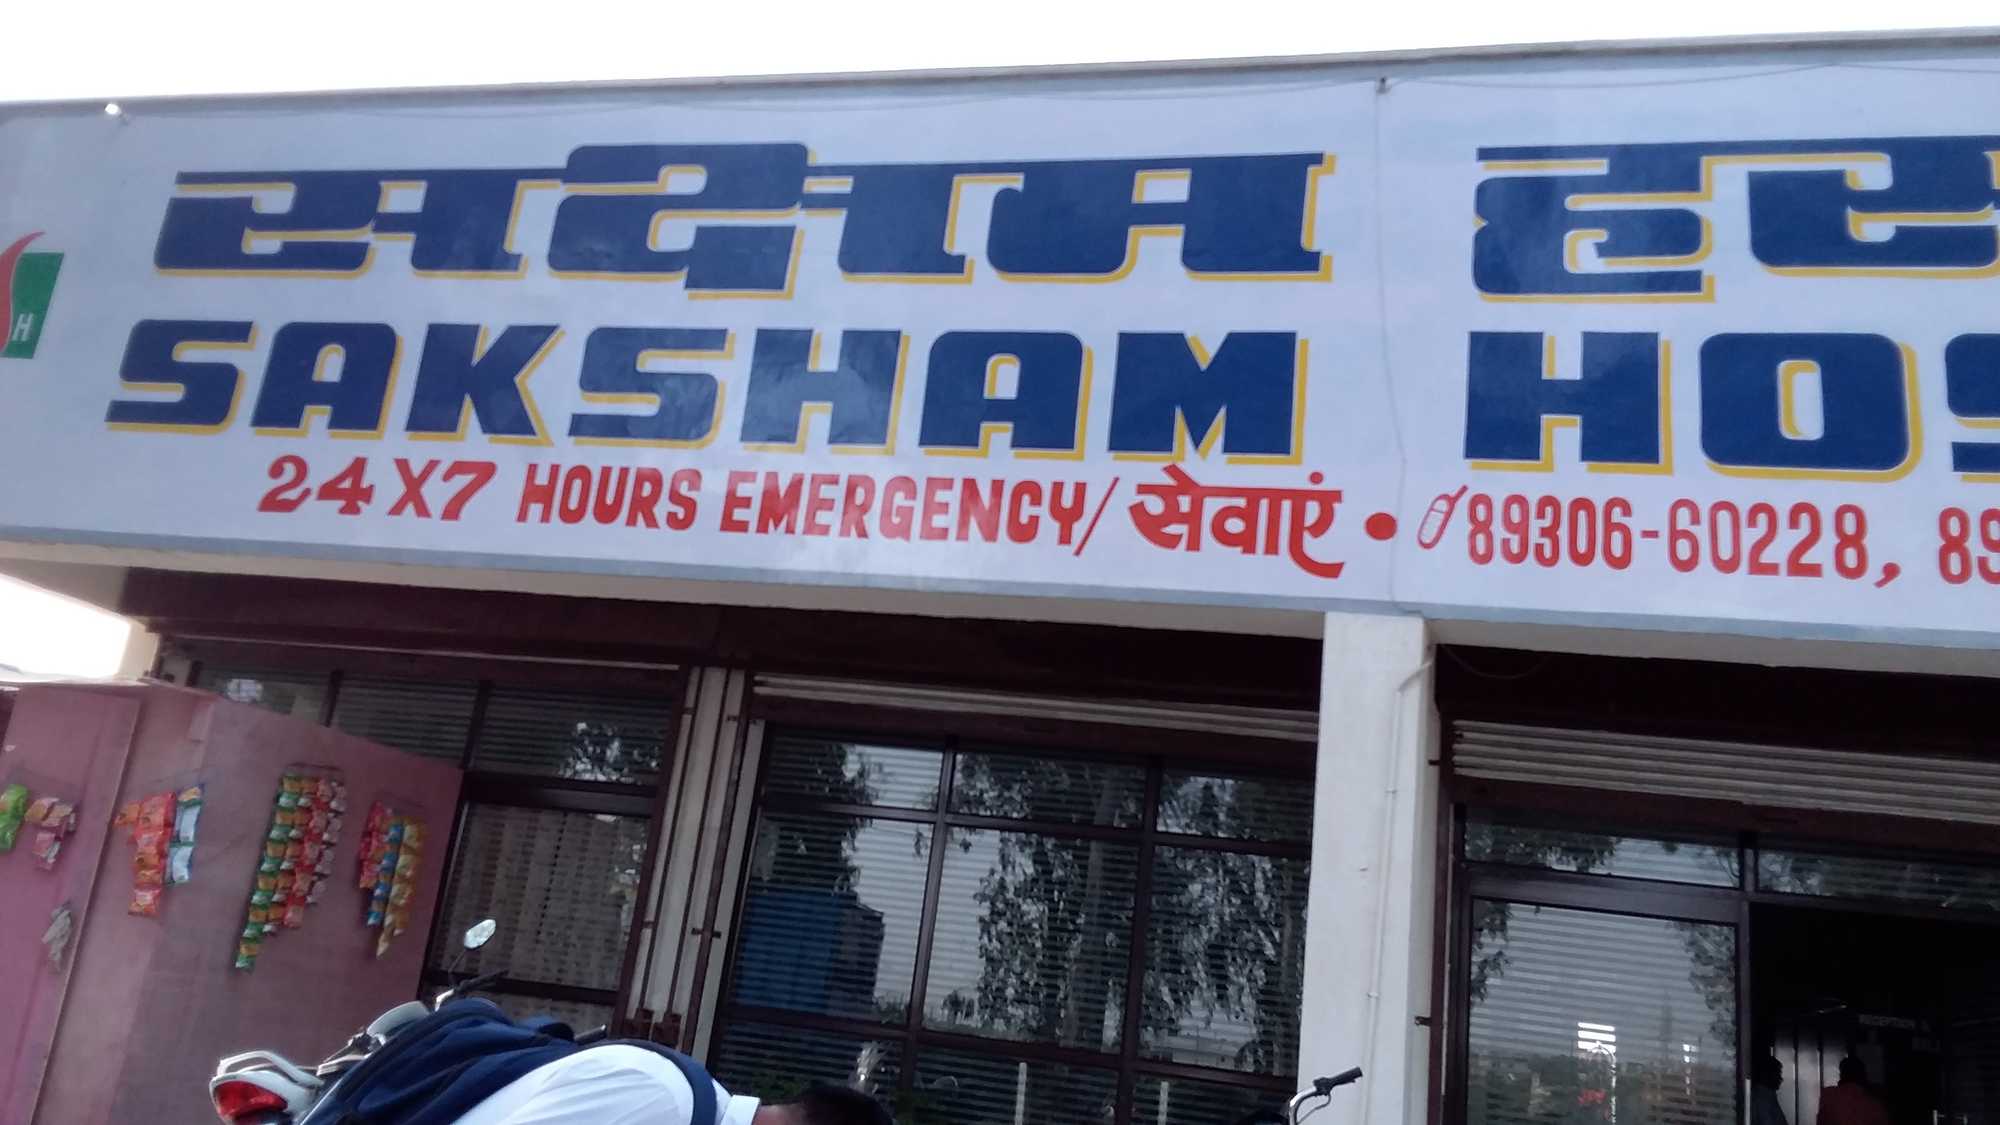 Saksham Hospital Logo